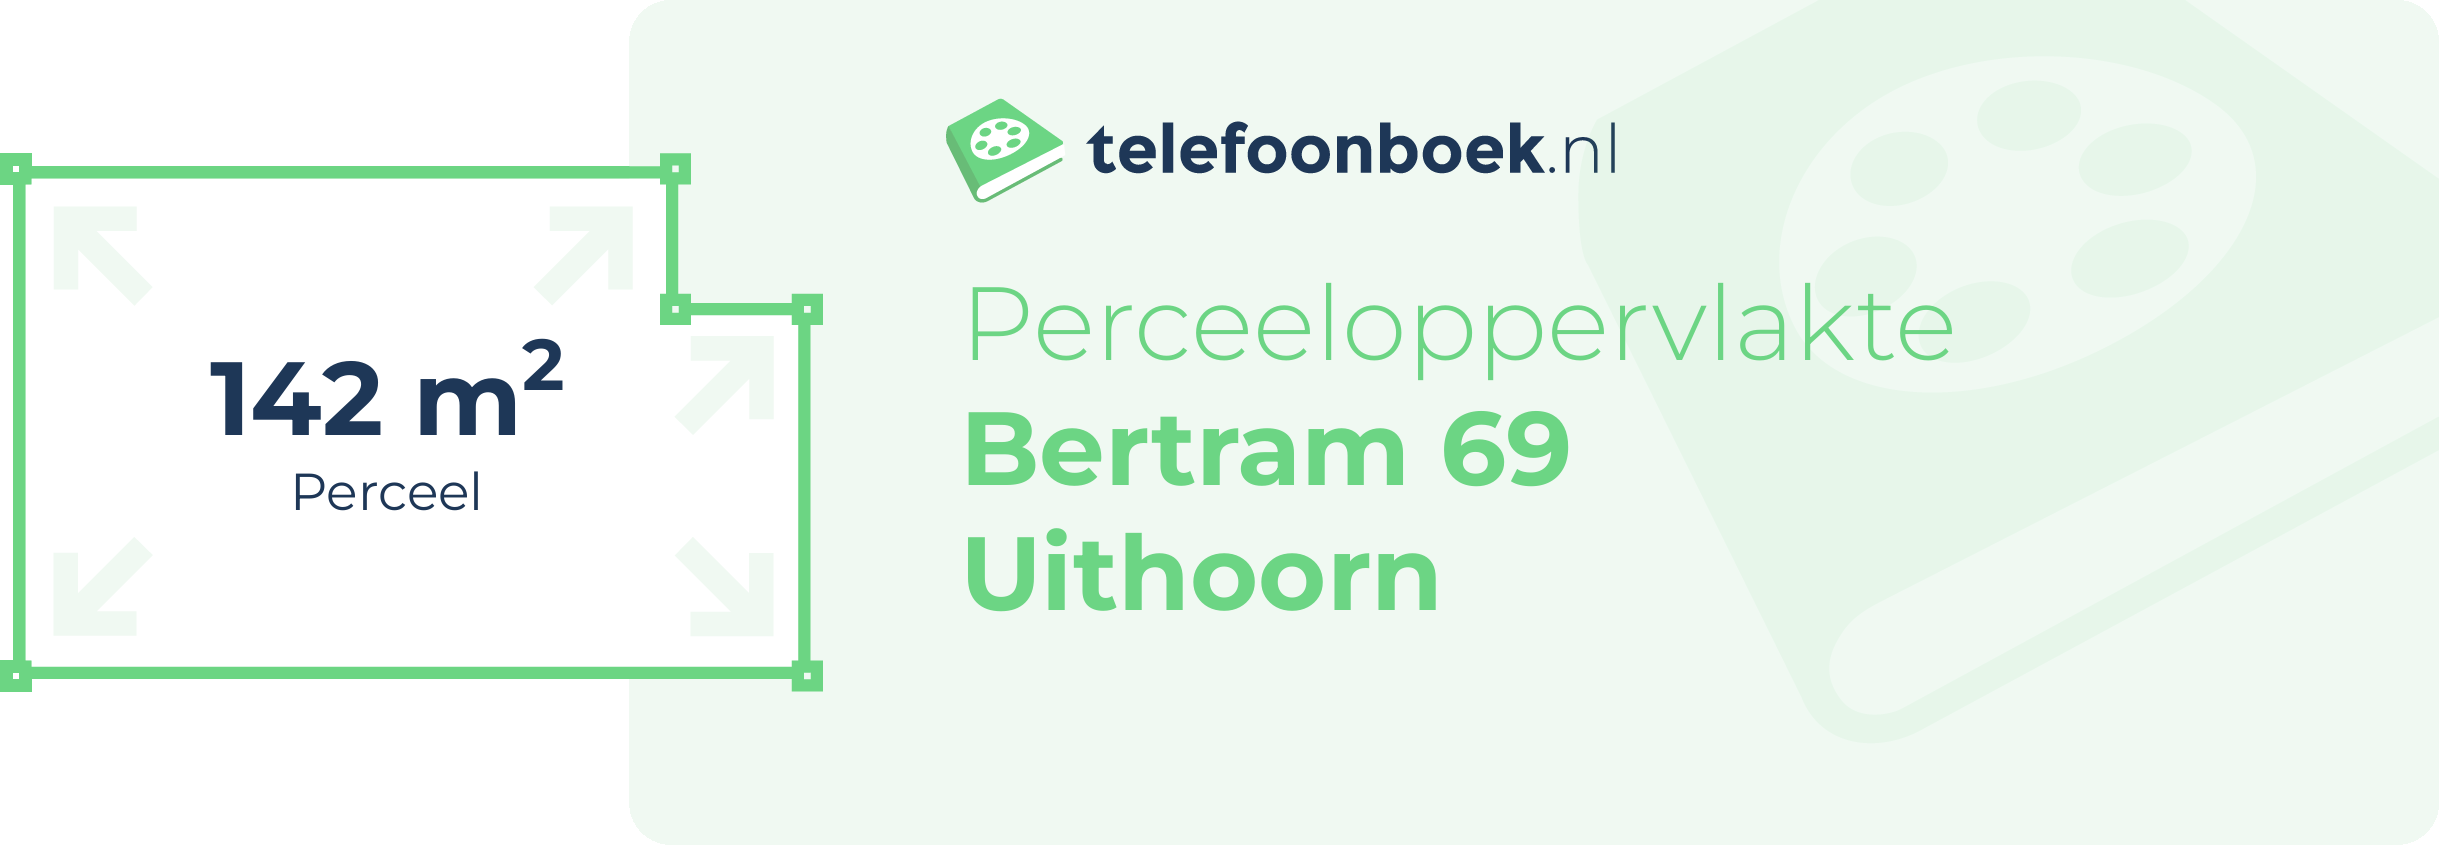 Perceeloppervlakte Bertram 69 Uithoorn